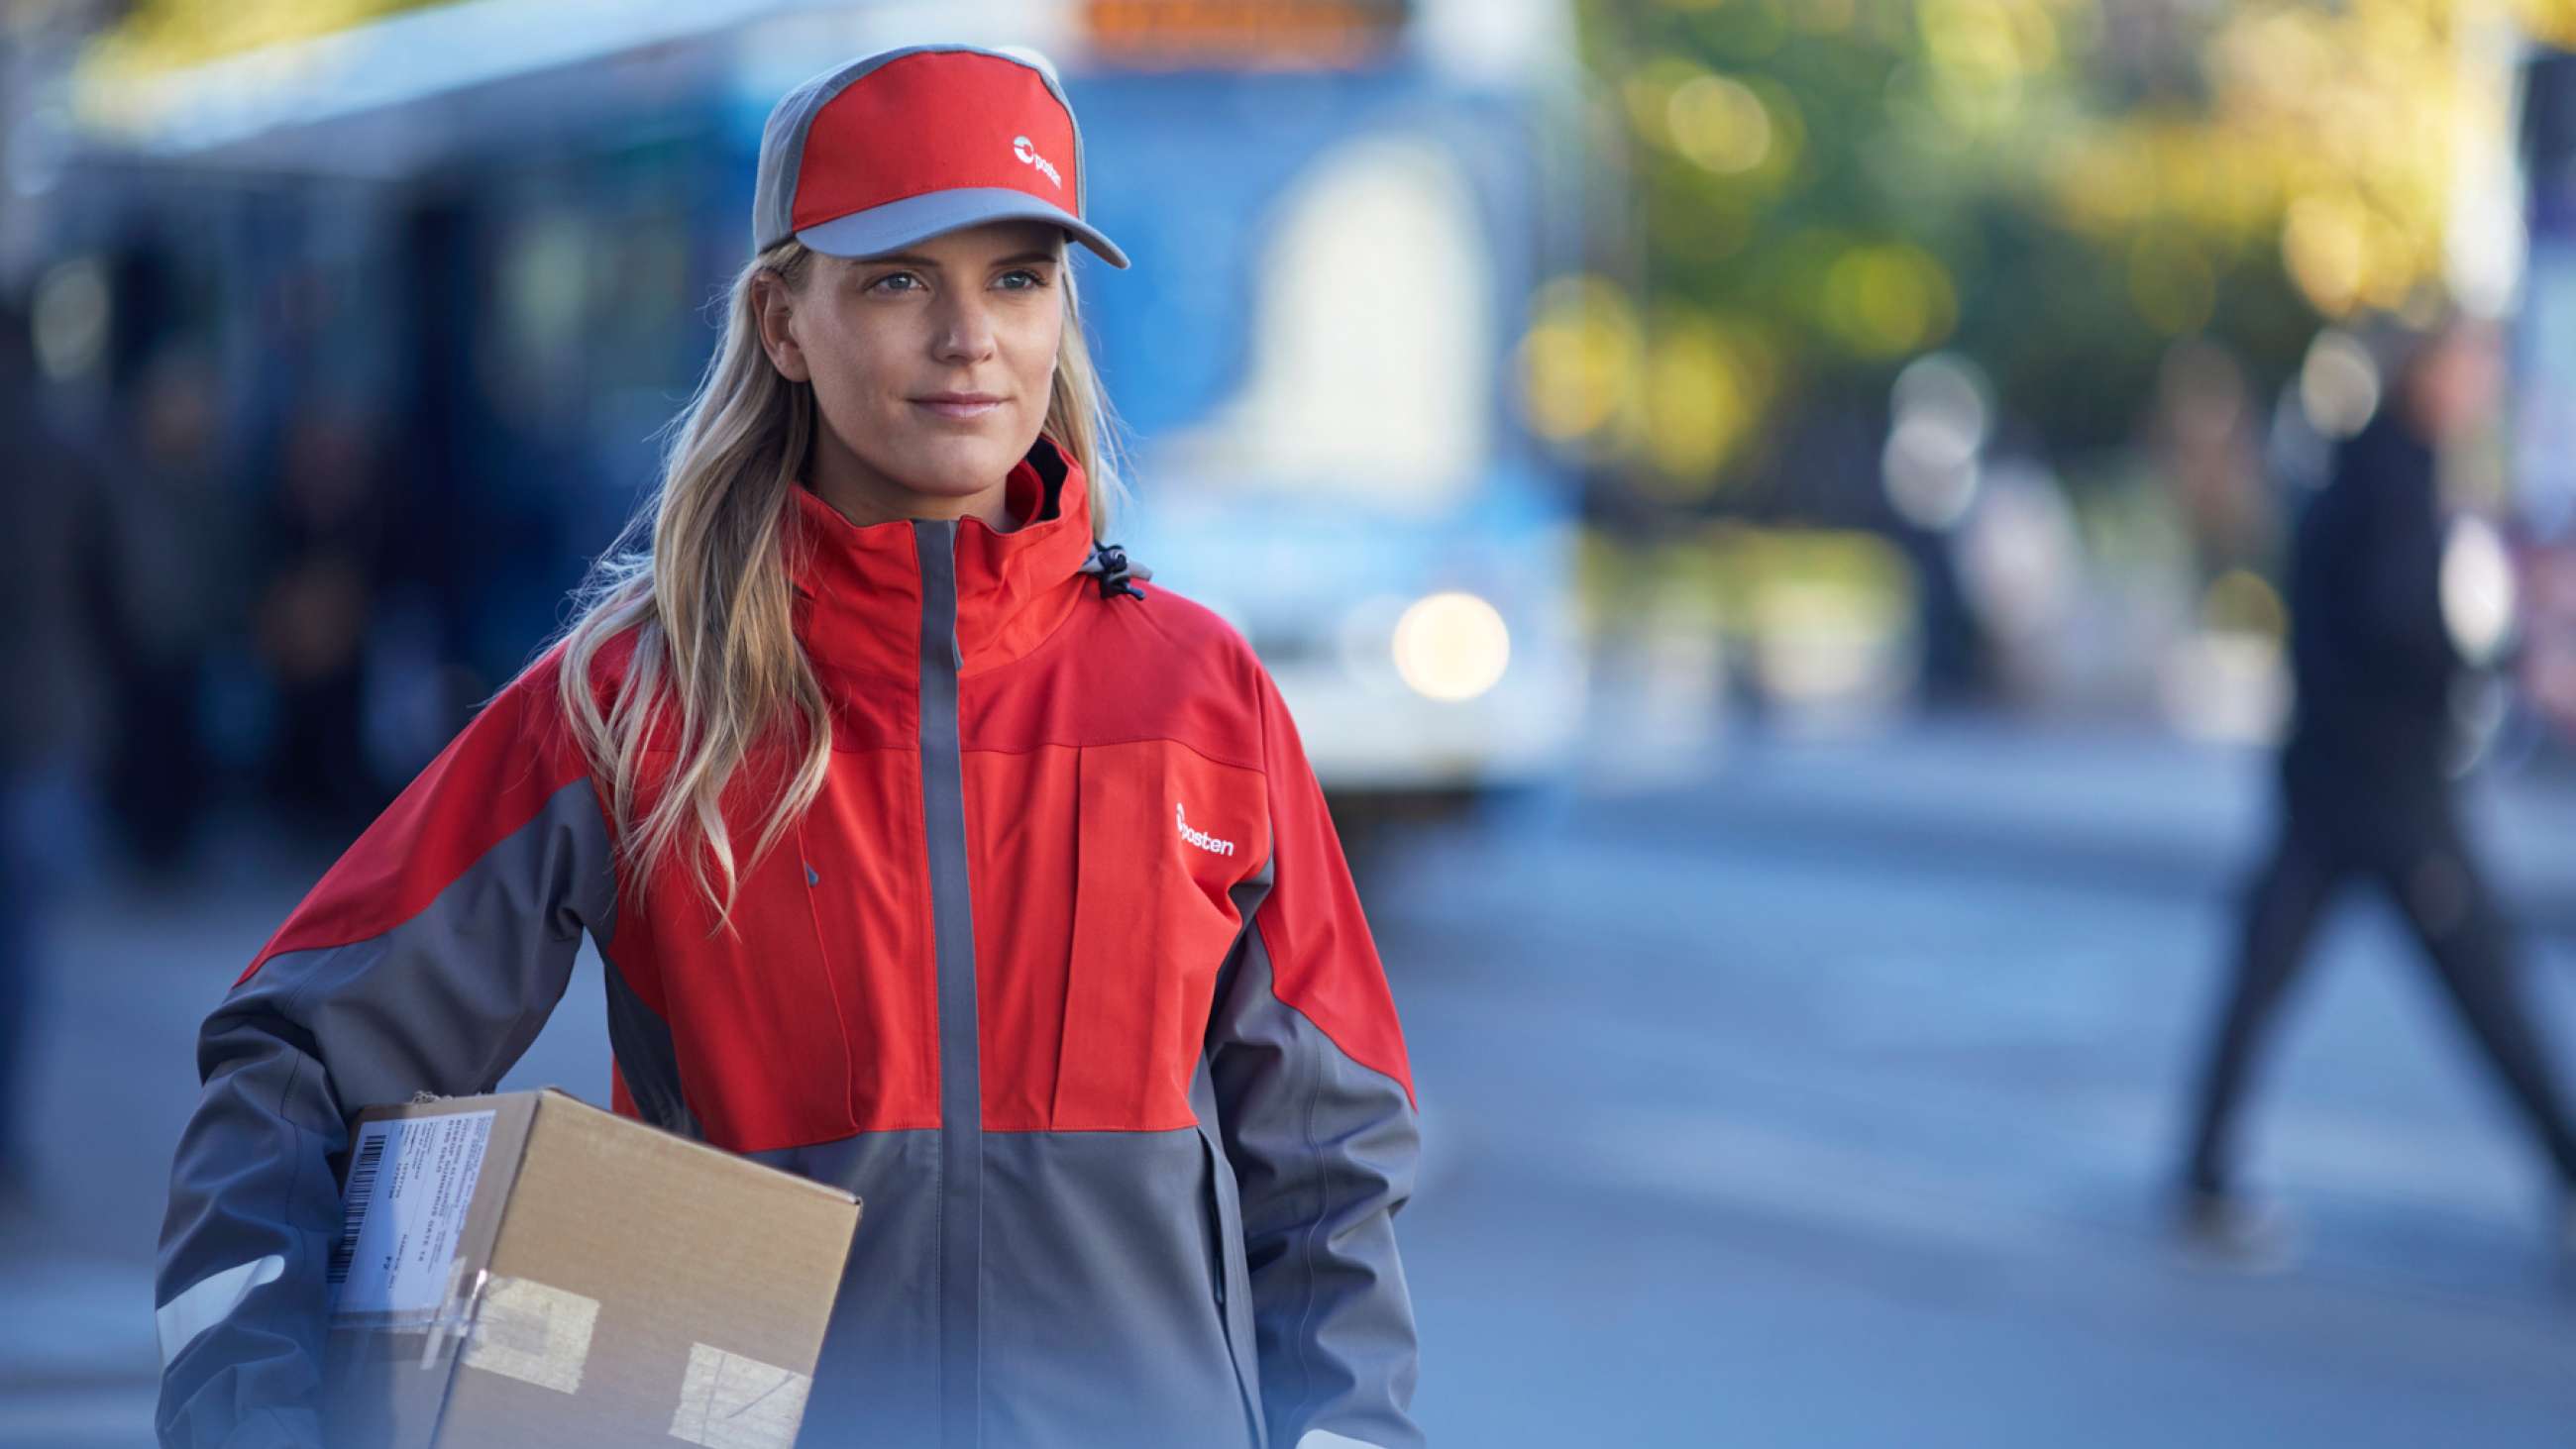 Kvinnelig postbud med pakke under armen i urbant strøk